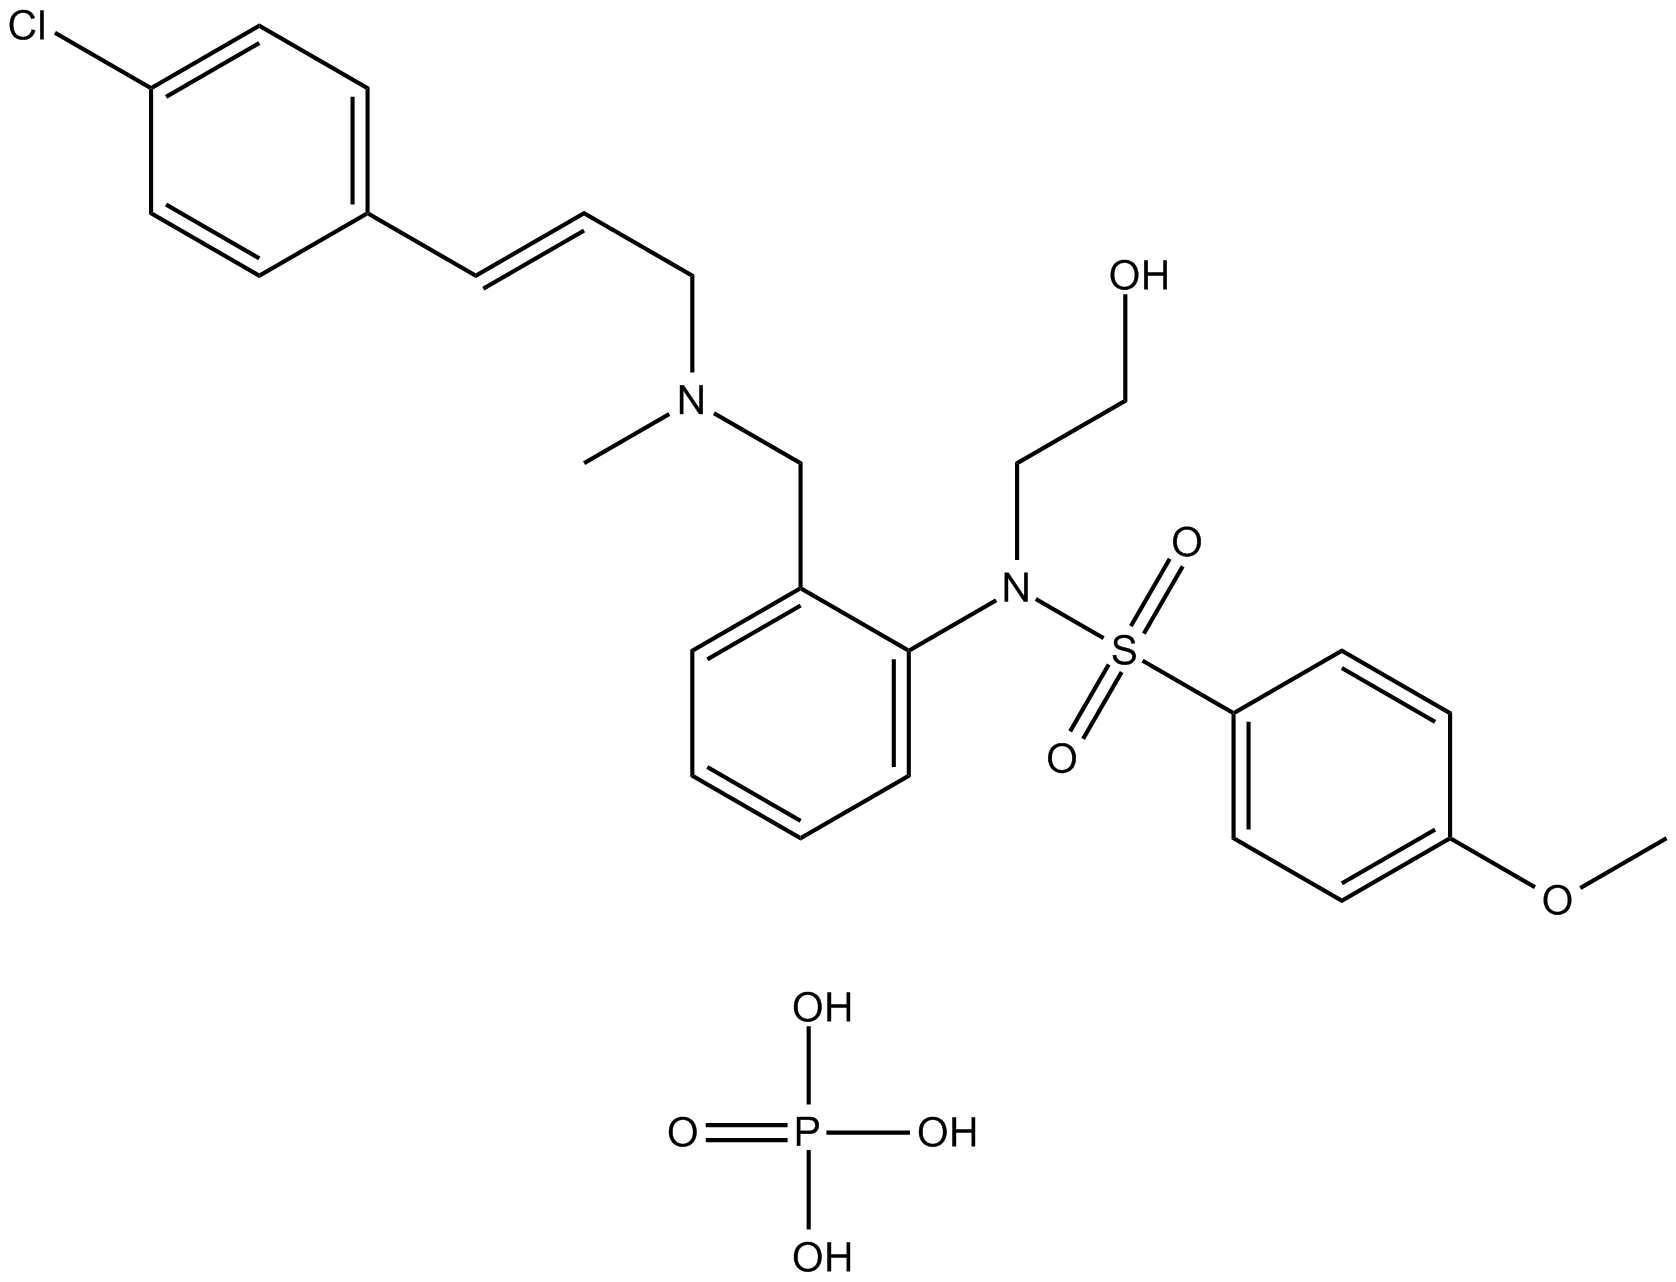 KN-93 Phosphate